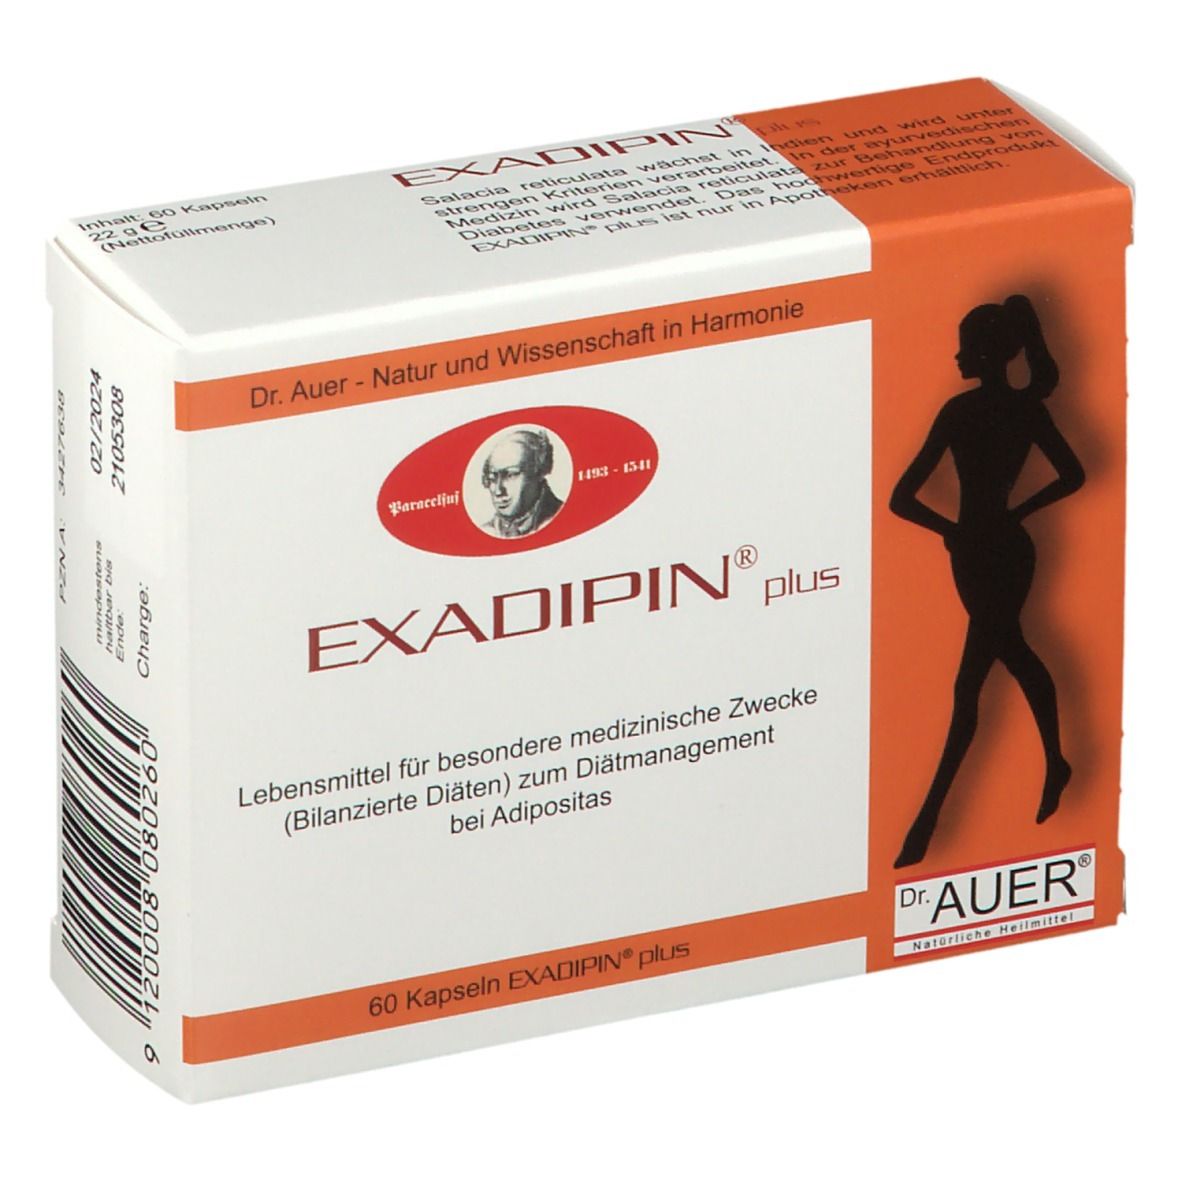 Exadipin®